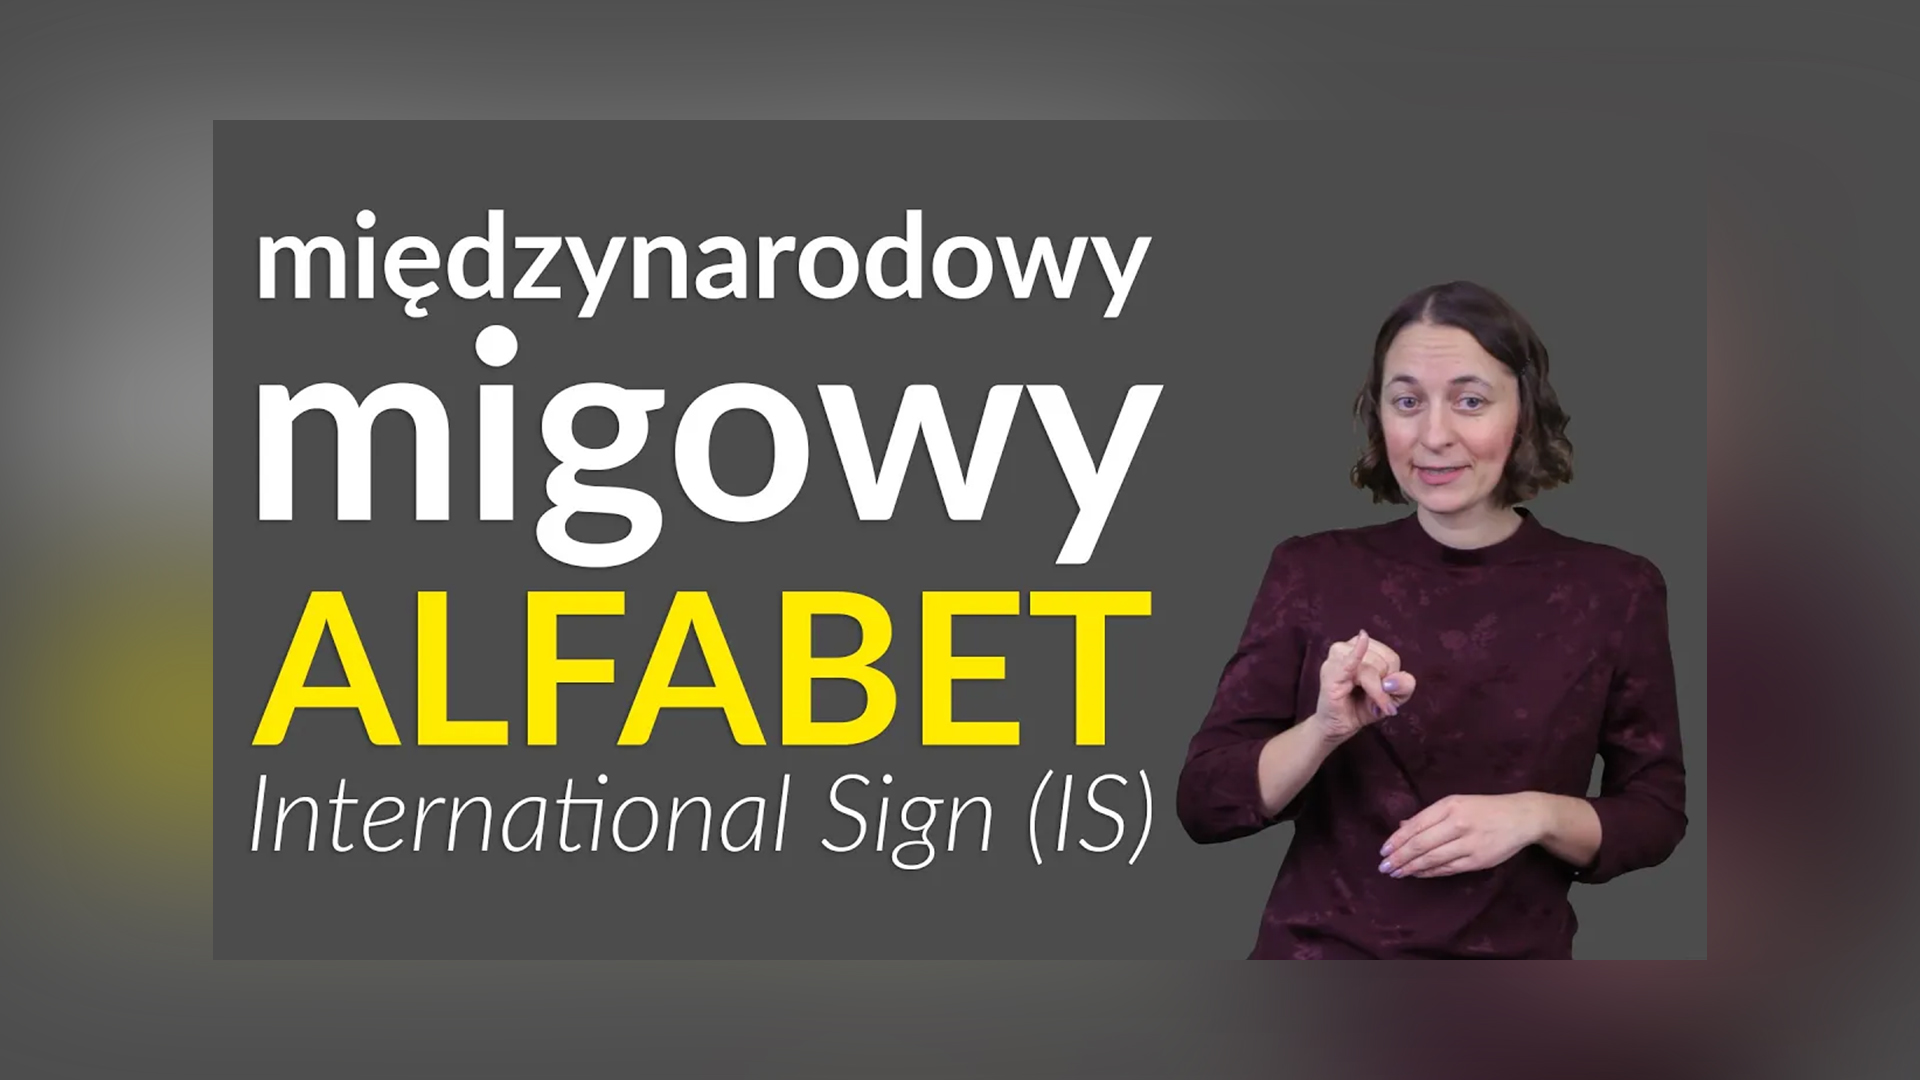 Grafika do filmu w PJM. Po prawej zdjęcie prowadzące Kingi Hołda-Justyckiej, po lewej napis: „Międzynarodowy migowy alfabet, International Sign (IS)”